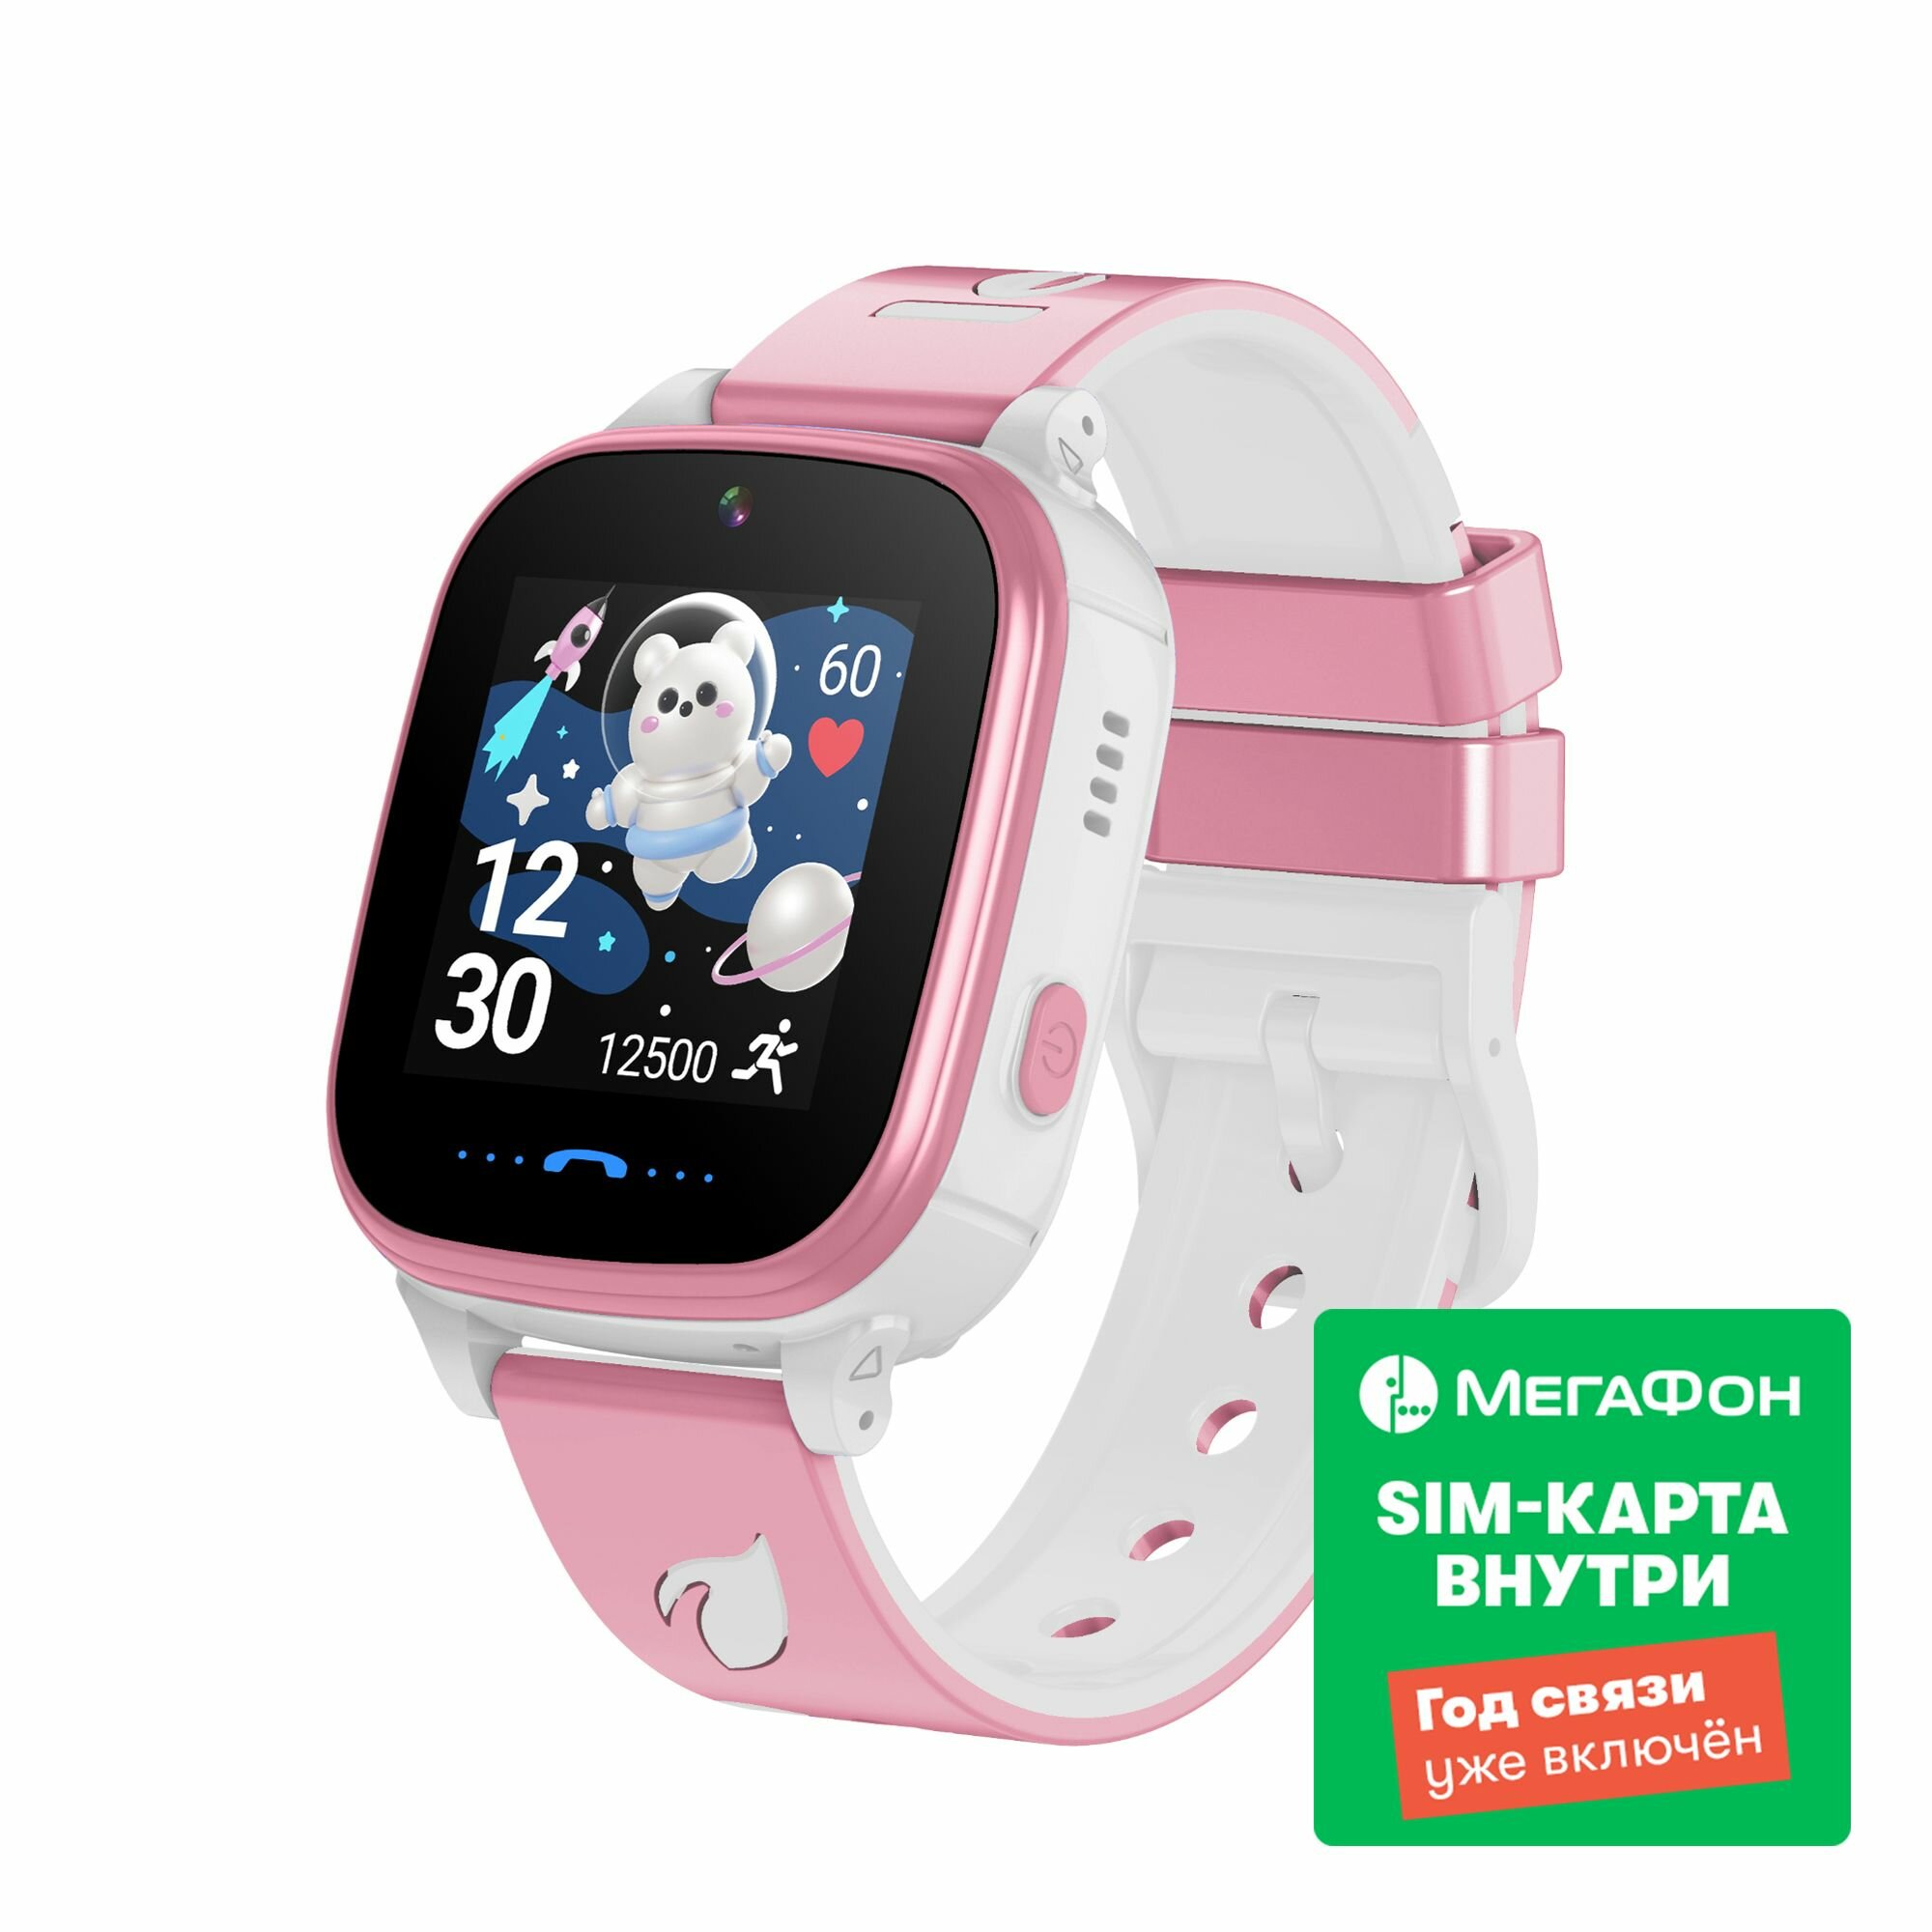 Детские умные часы LEEF Nimbus+SIM-карта "Год связи", цвет розовый+белый